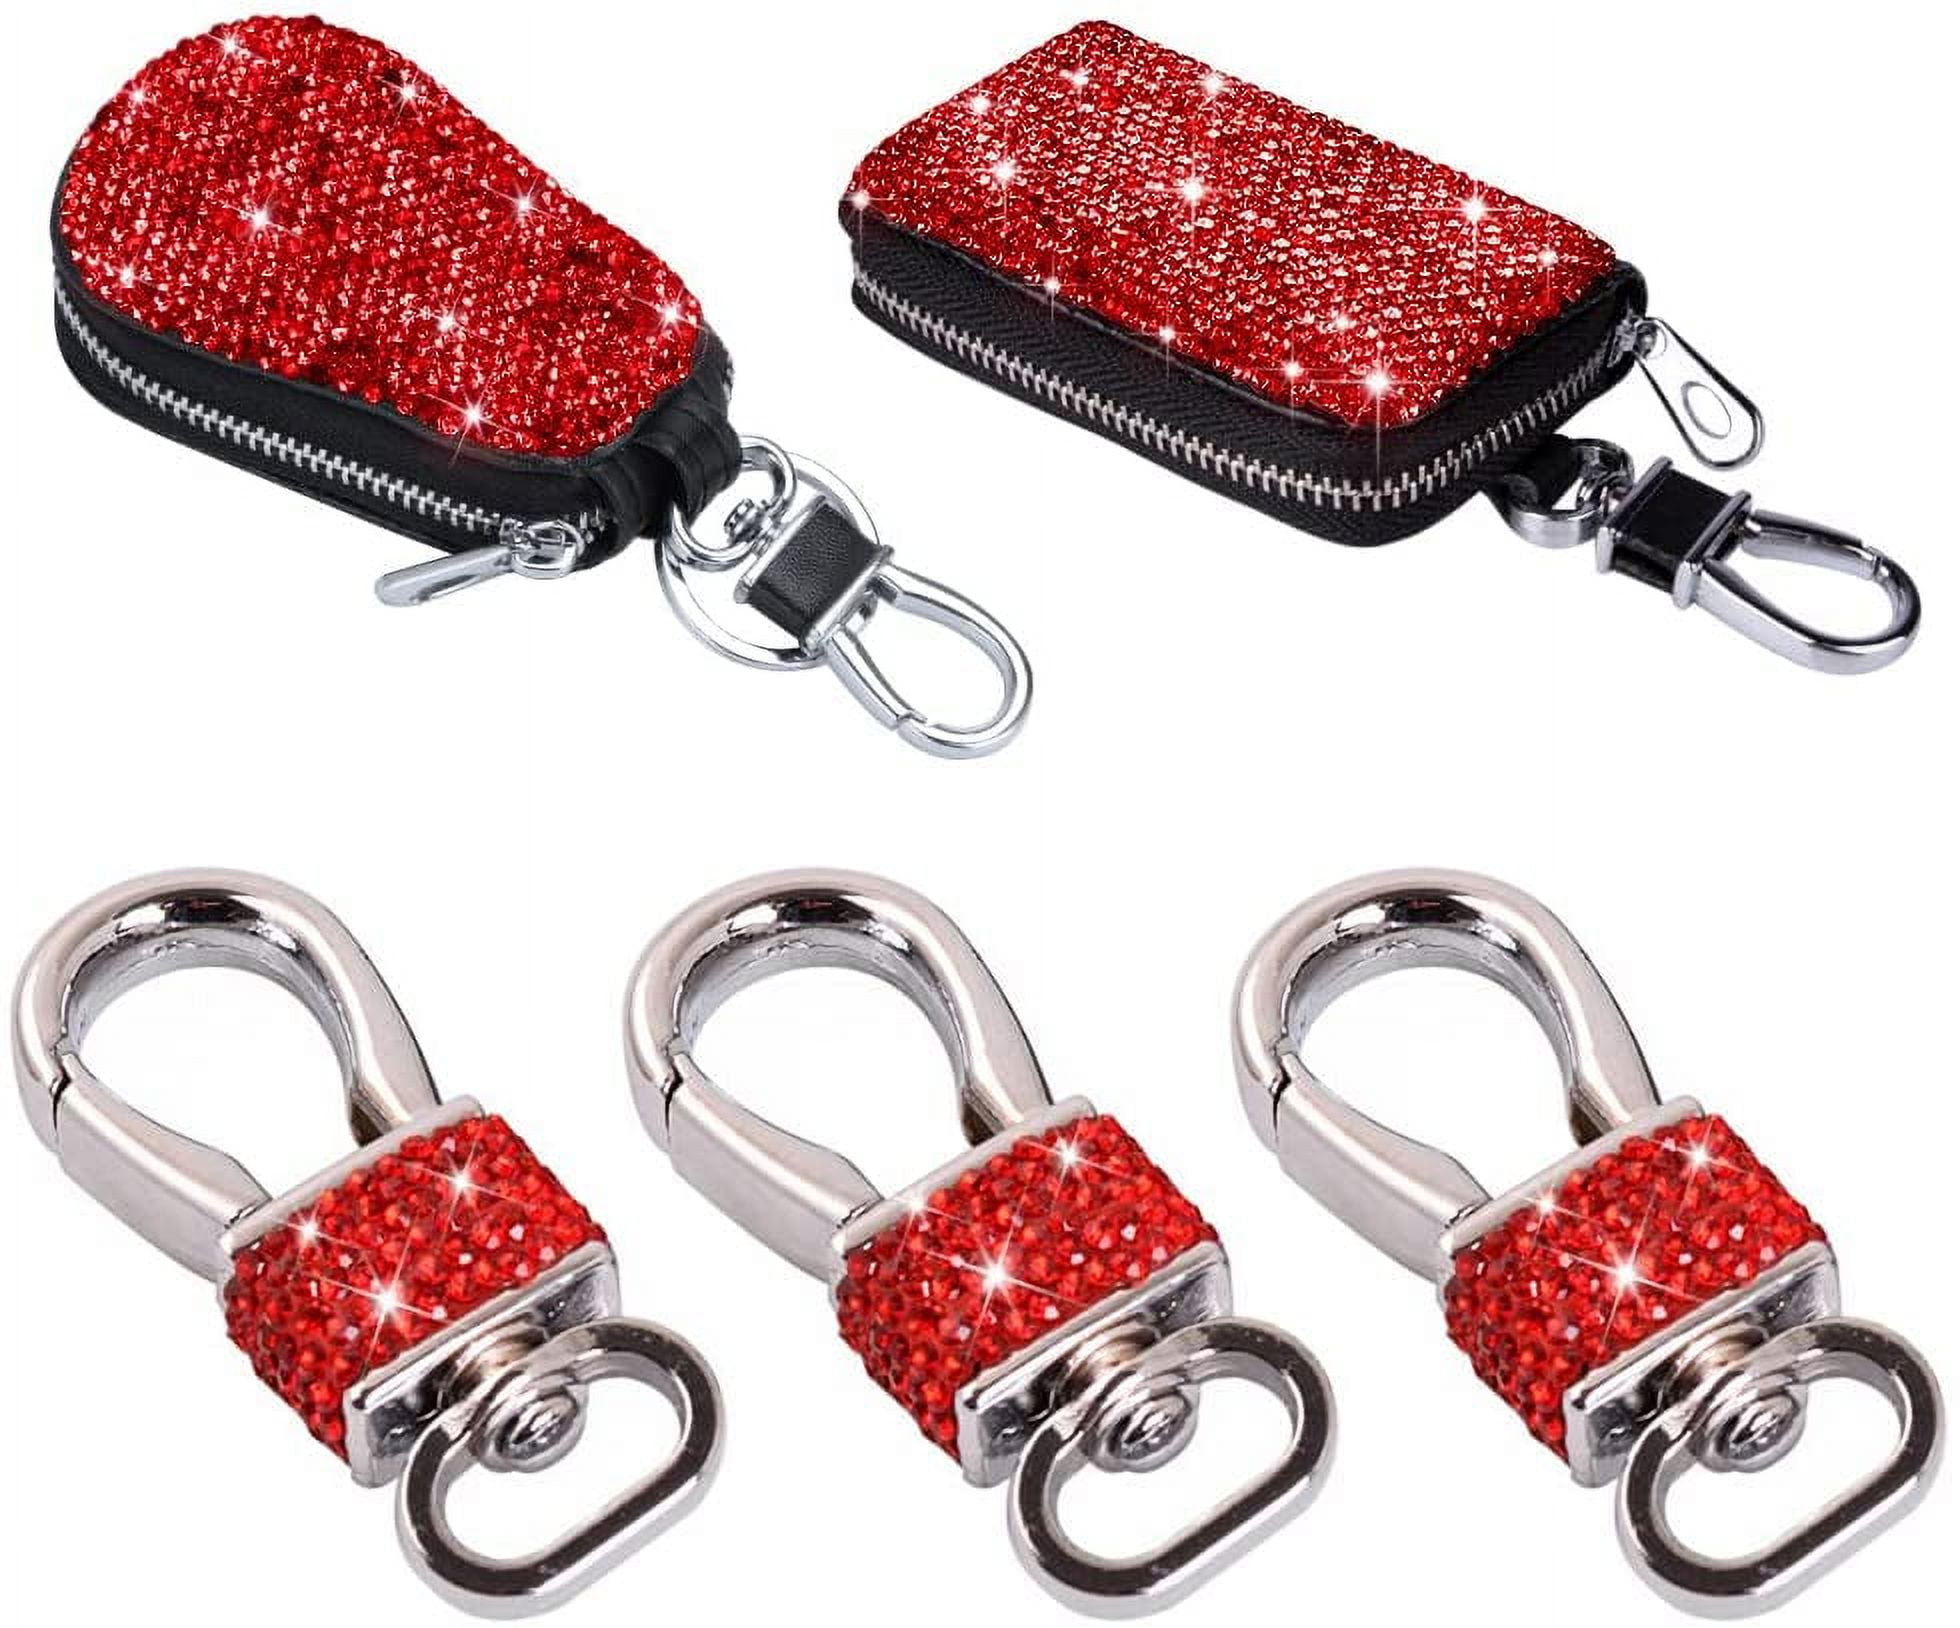 Coach Lock & Key Purse Charm … Key FOB/ Ring C1679 NWT | eBay